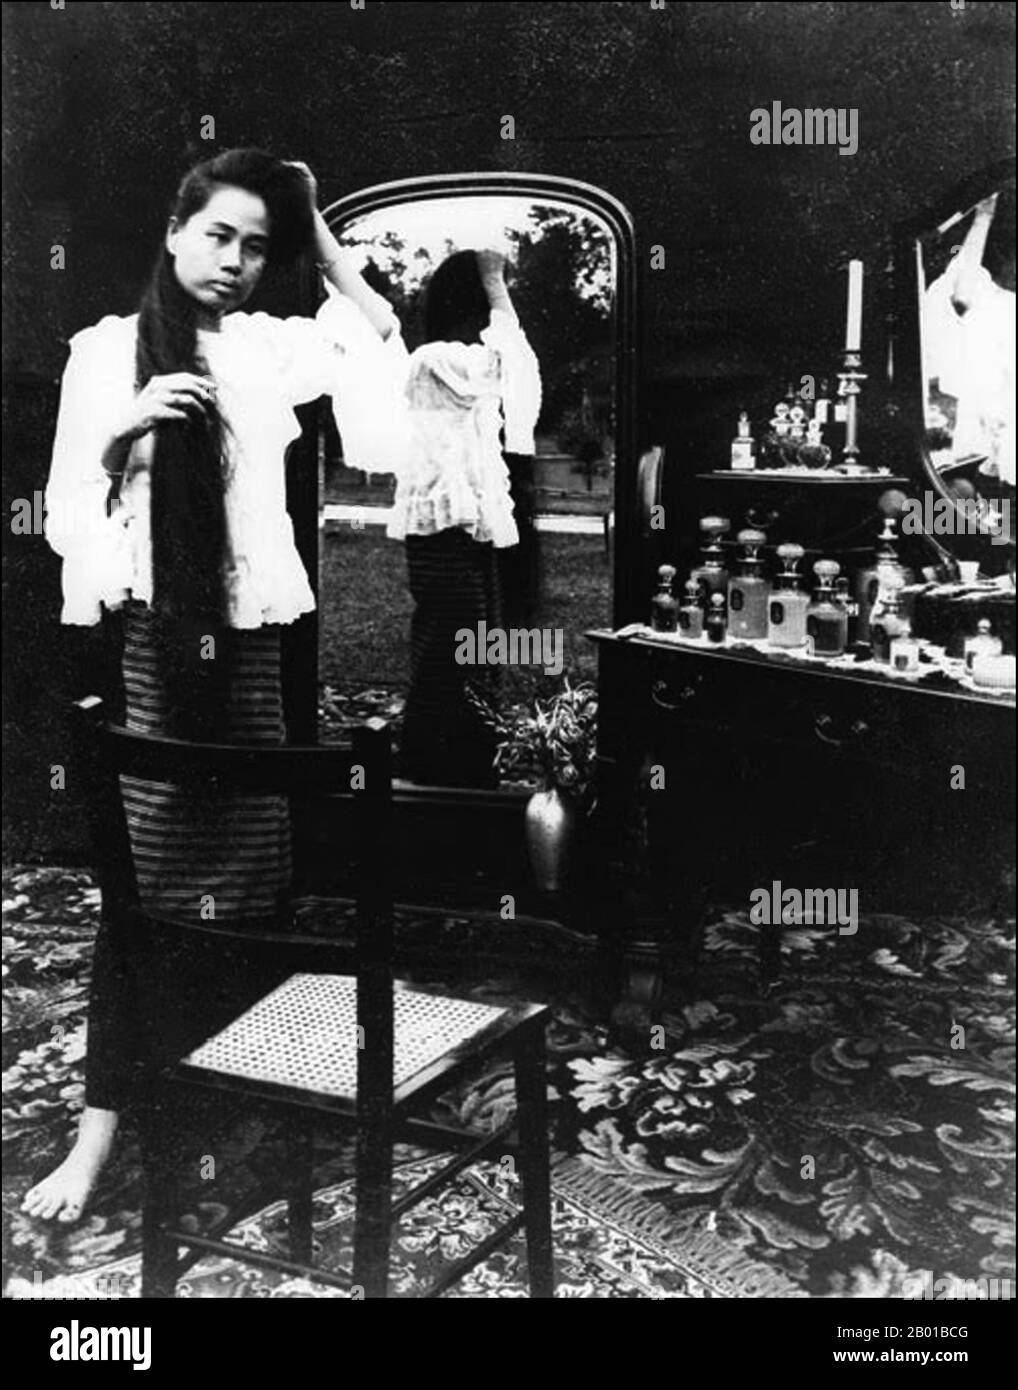 La principessa Dara Rasmi (Chiang mai, 26 agosto 1873 – 9 dicembre 1933), era la Principessa di Chiang mai e Siam (in seguito Thailandia) e la figlia del re Inthawichayanon e della regina Thipkraisorn Rajadewi di Chang mai, uno scion della dinastia Chao Chet Ton. Era una delle conspecie della principessa di Chulalongkorn, re Rama V del Siam e ha dato alla luce una figlia dal re Chulalongkorn, la principessa Vimolnaka Nabisi. Nel 1886 lasciò Chiang mai per entrare nel Grand Palace di Bangkok, dove le fu dato il titolo Chao Chom Dara Rasami della Dinastia Chakri. Mentre viveva nel Grand Palace, Dara Rasami e i ladi Foto Stock